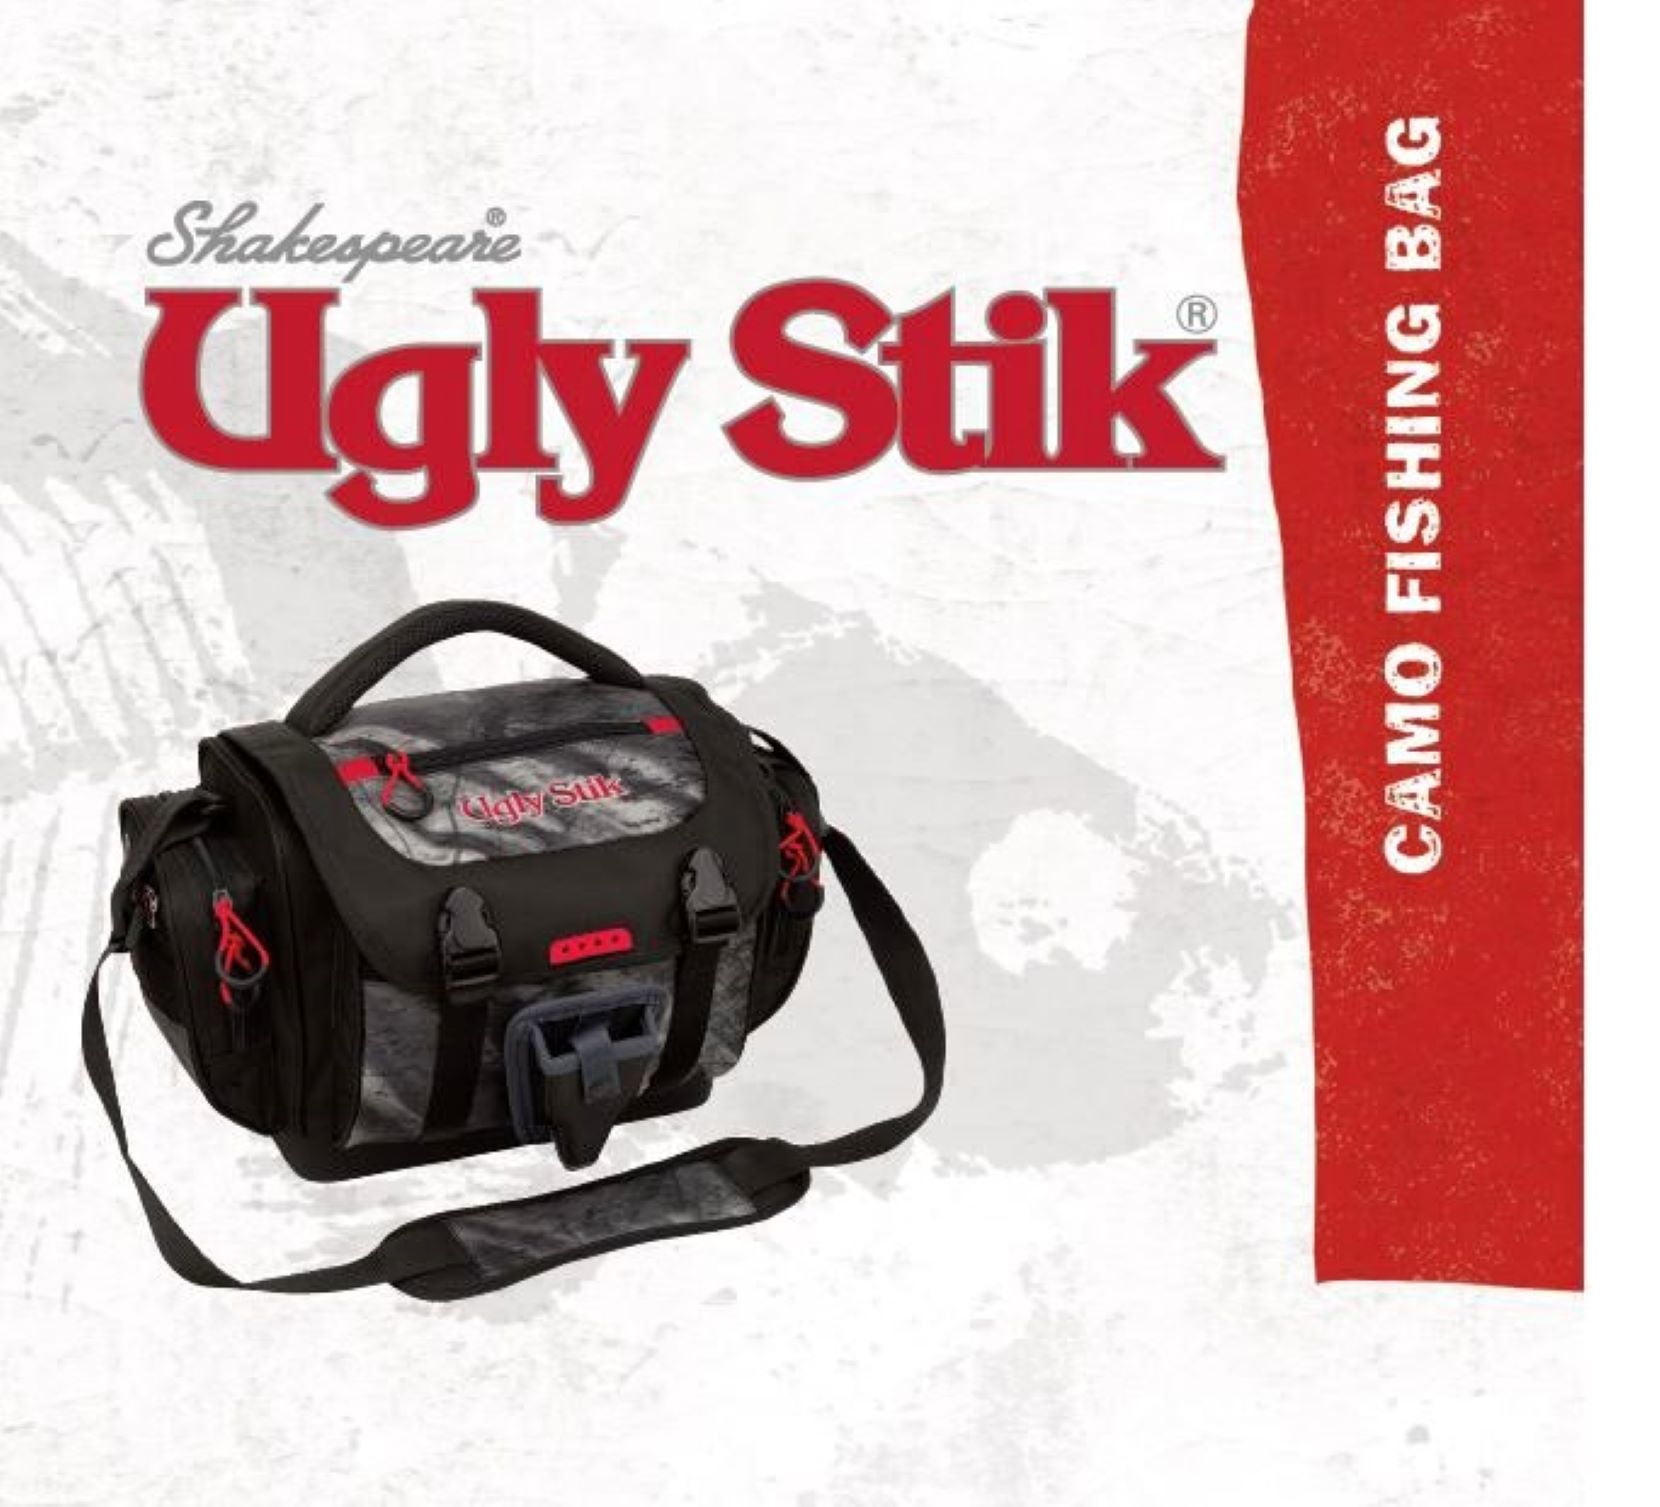 Shakespeare Ugly Stik Cooler Bag